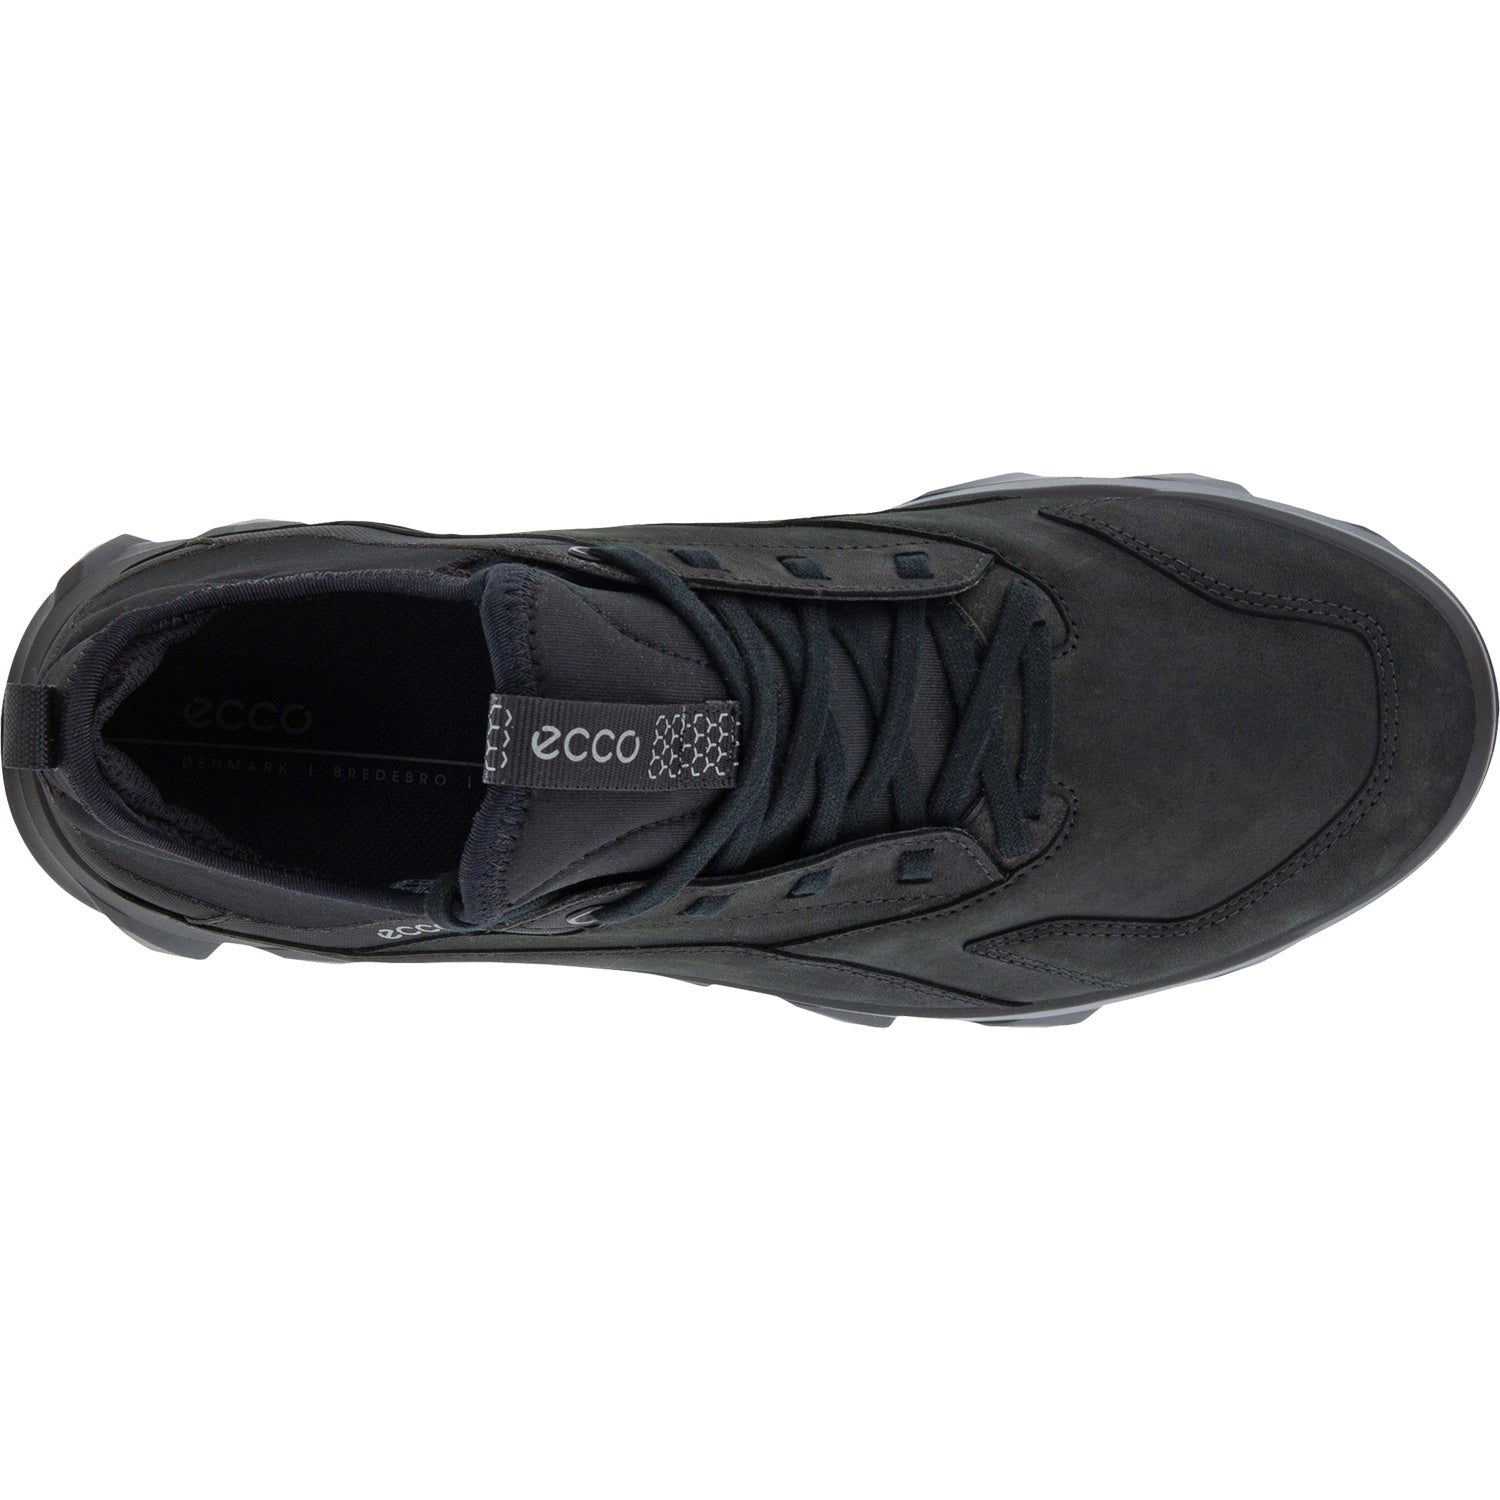 Ecco MX Low | Women's Outdoor Shoes | Footwear etc.